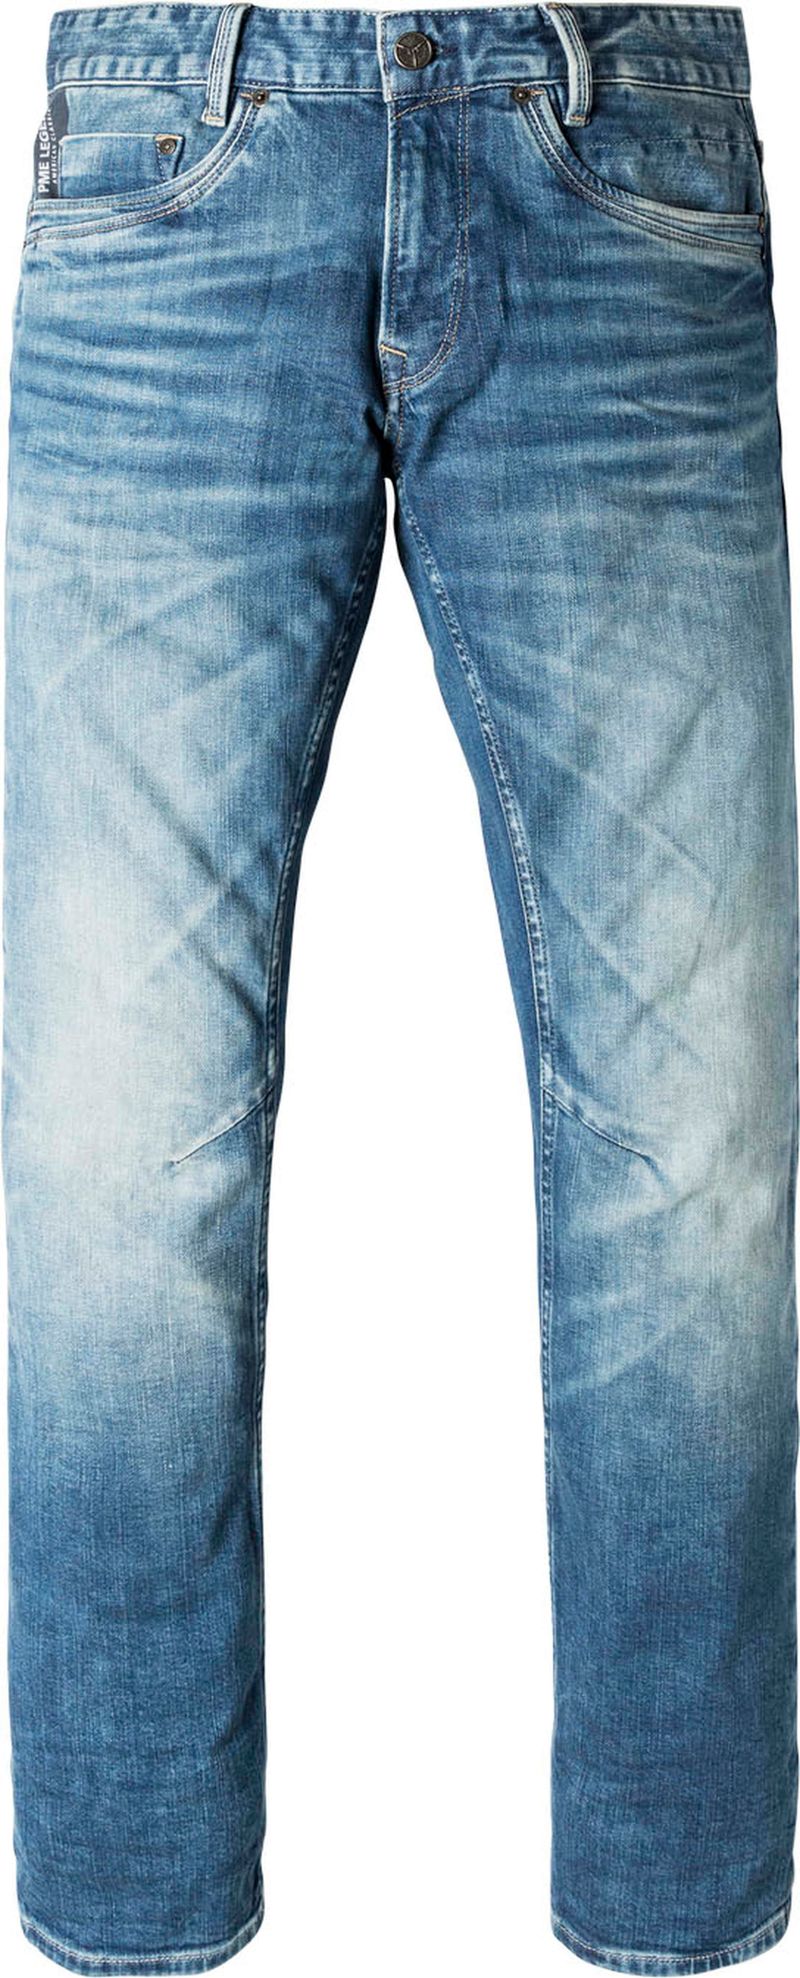 PME Legend Skymaster Jeans Blauw - maat W 33 - L 36